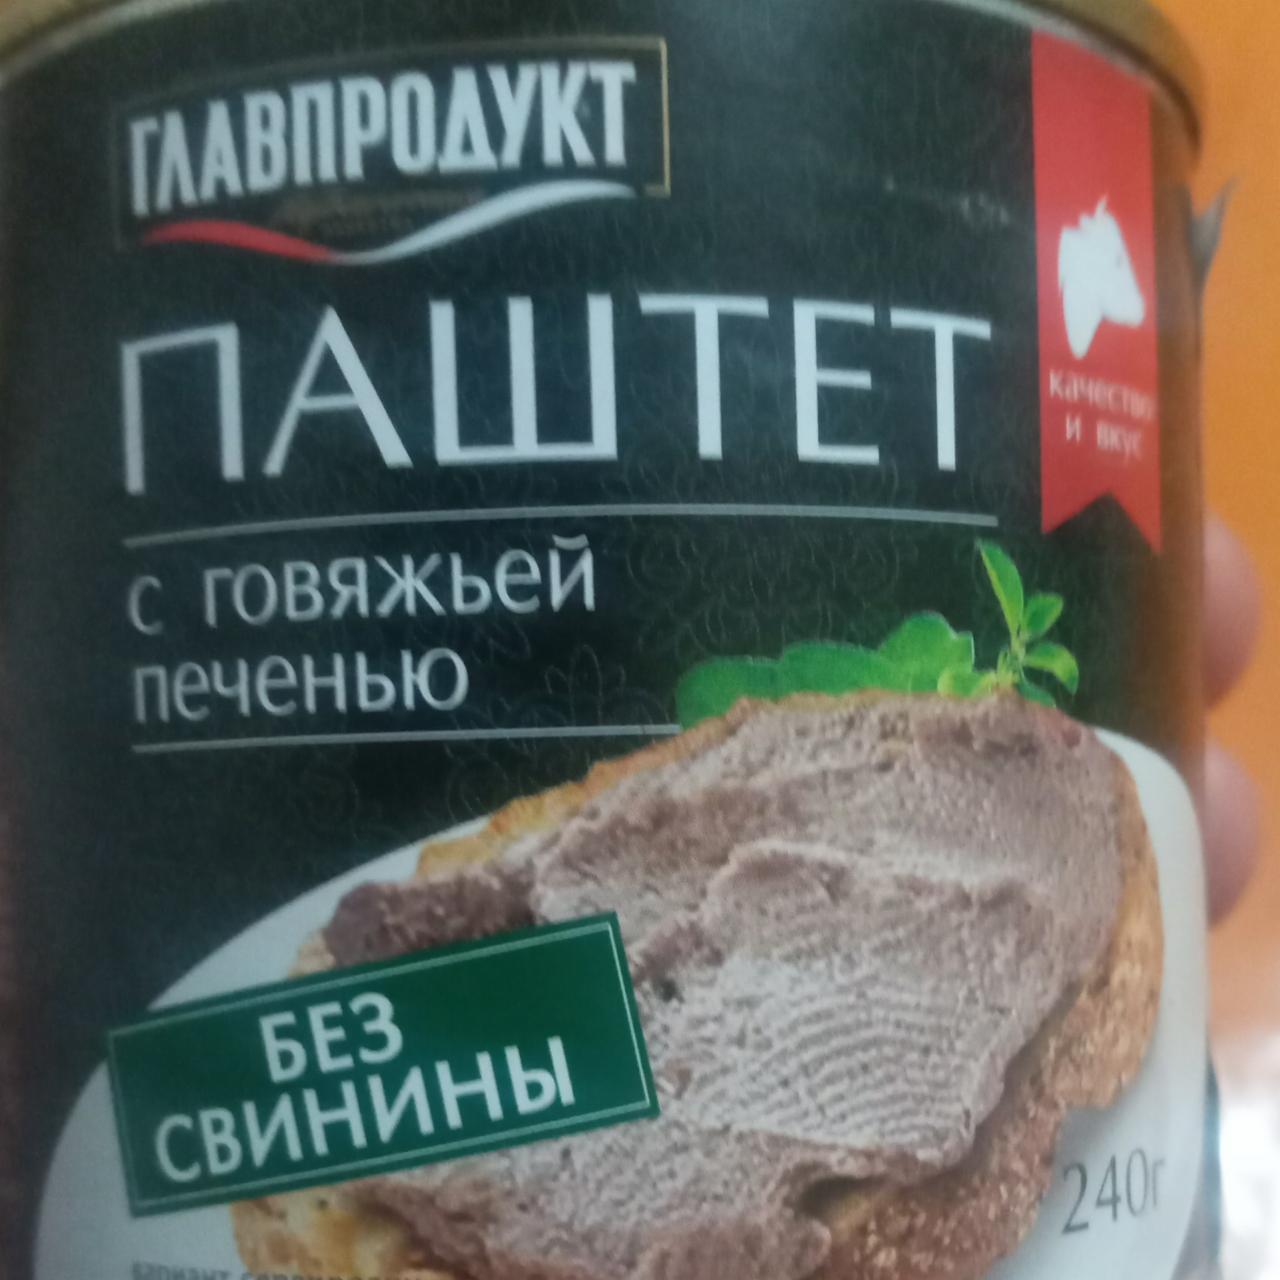 Фото - Паштет с говяжьей печенью без свинины Главпродукт